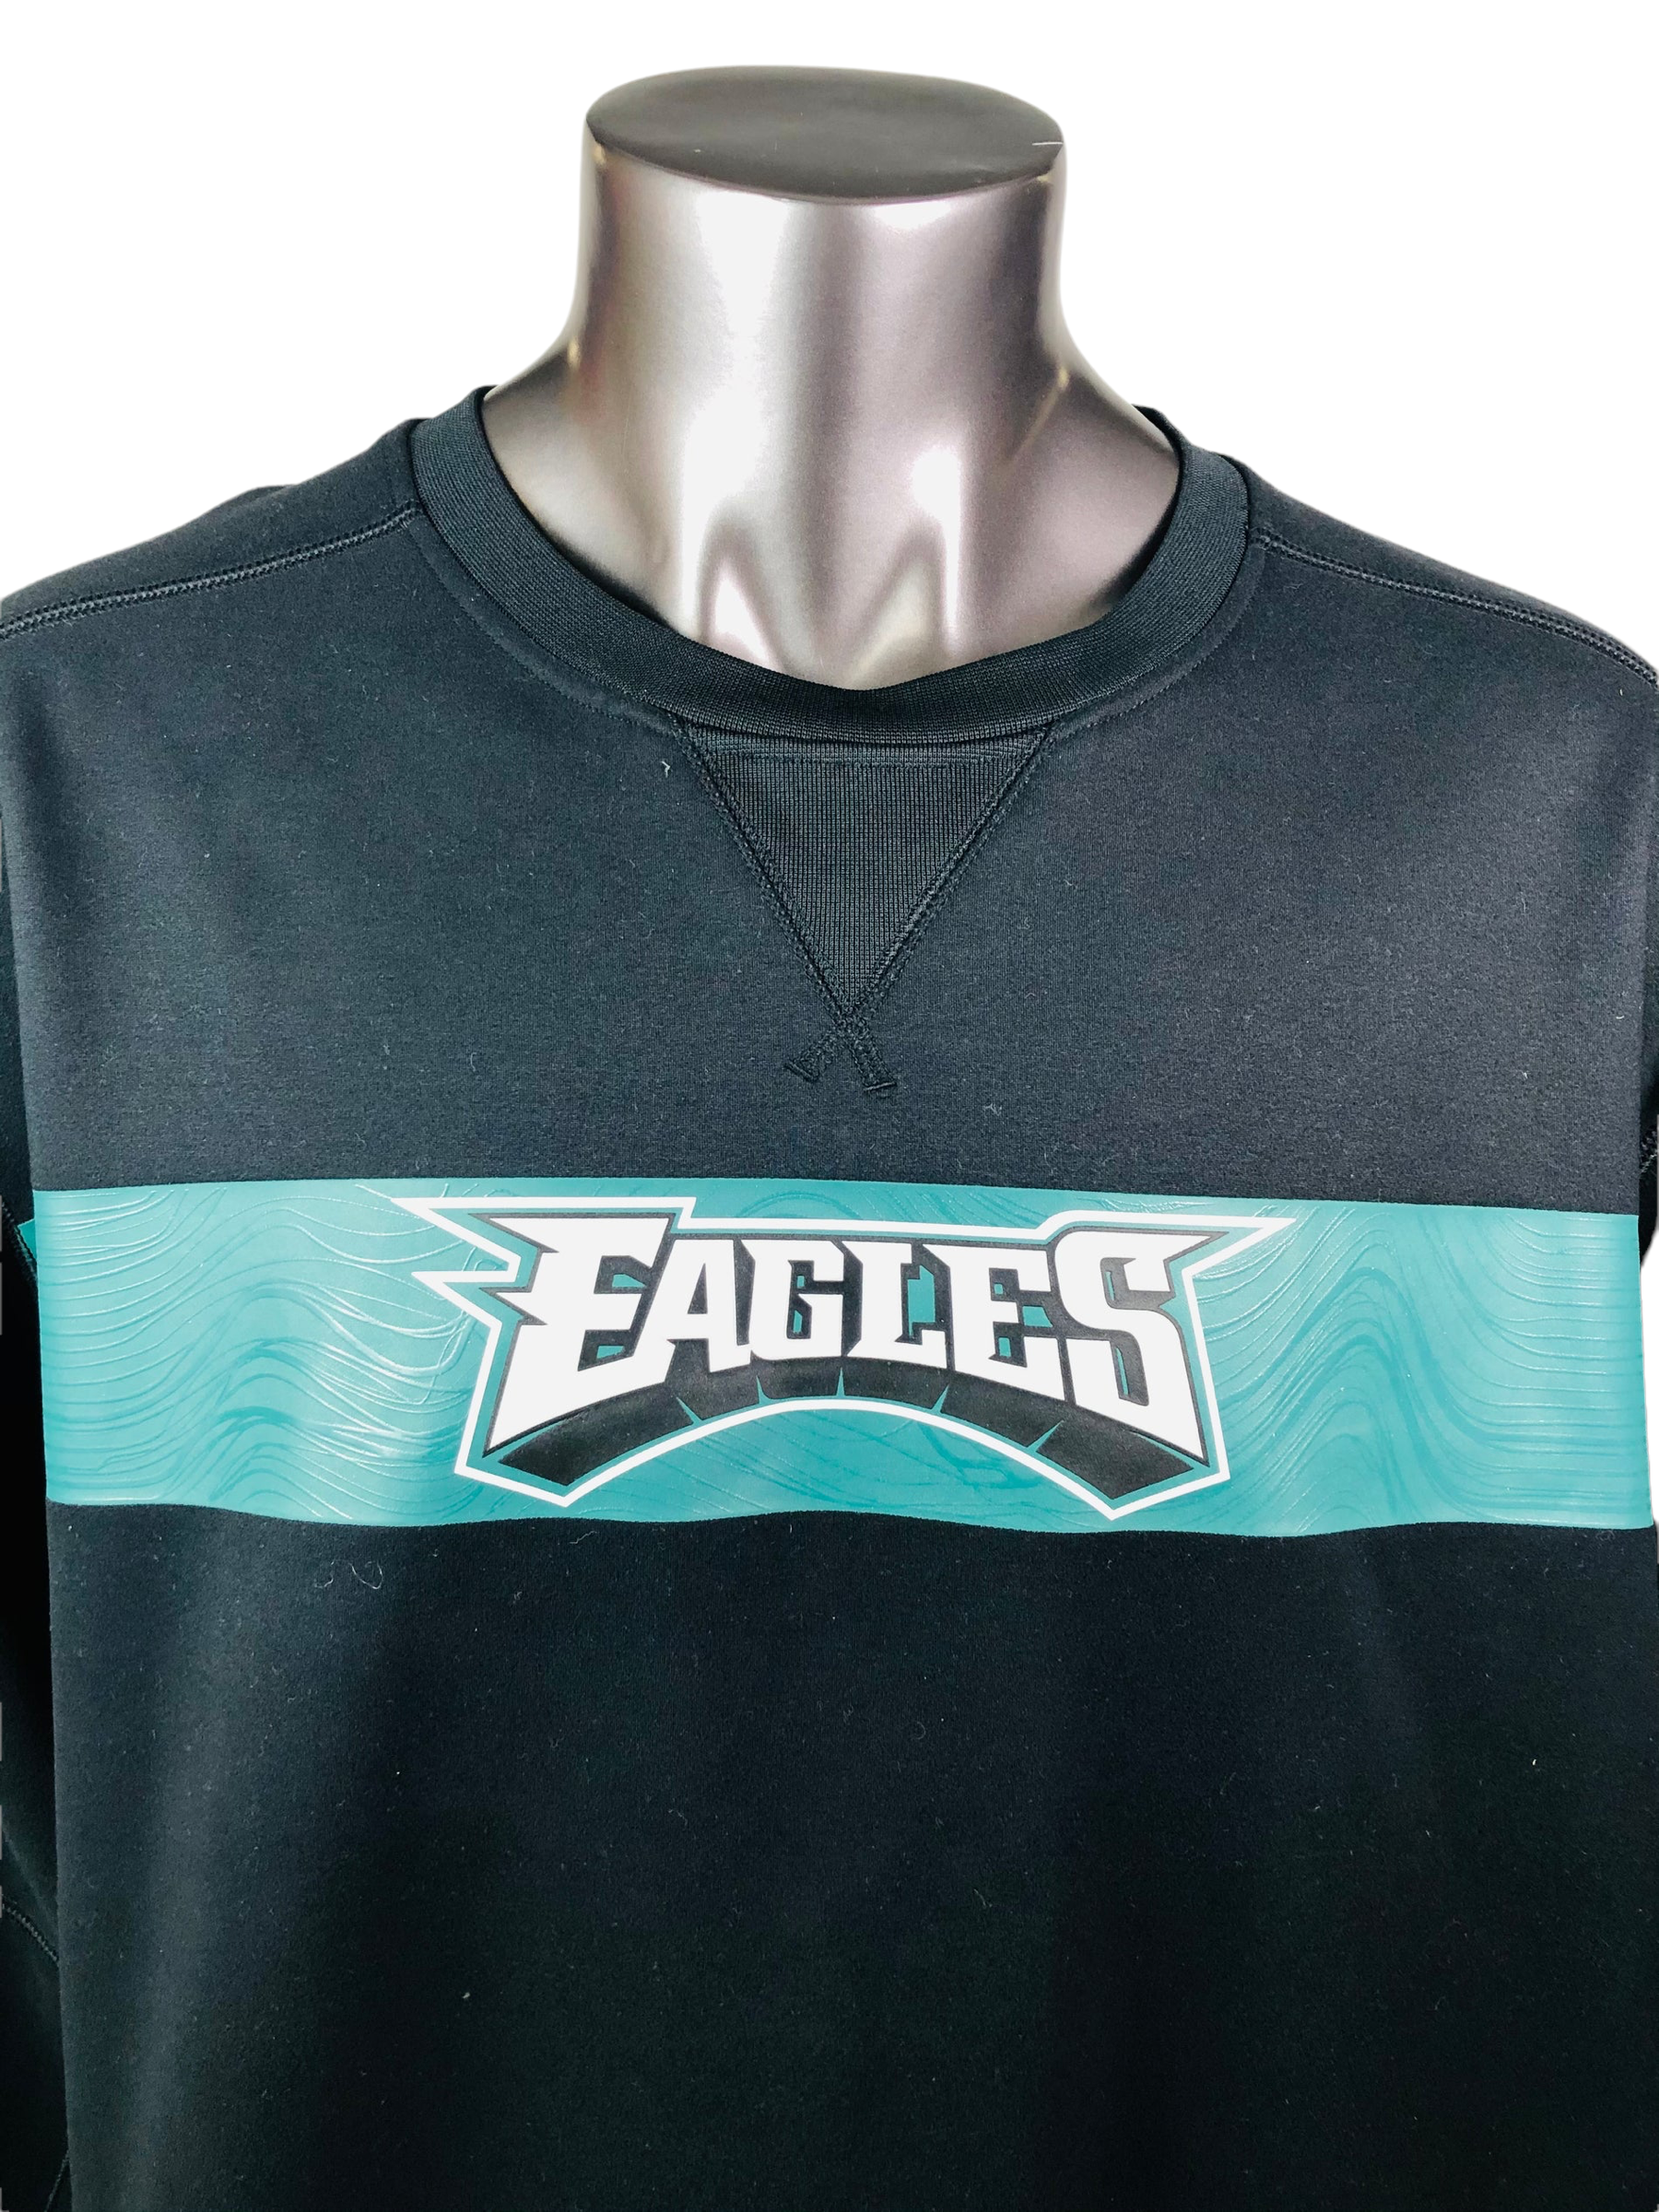 Nike vintage hoodies. Philadelphia eagles